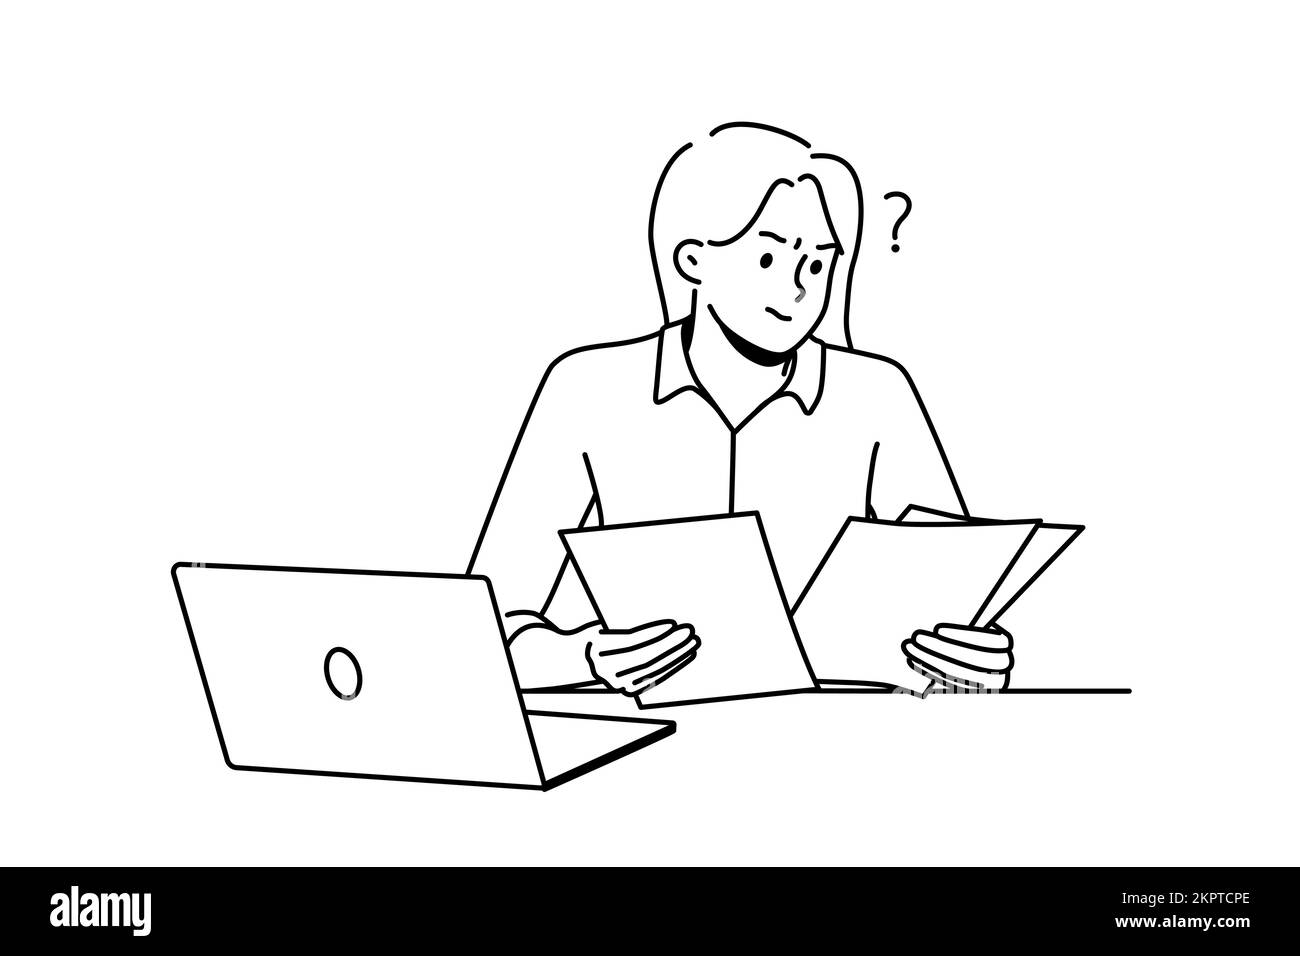 Frustrierte Frau, die mit Papierkram am Laptop arbeitet. Verwirrte weibliche Angestellte ziehen Dokumente am Arbeitsplatz in Betracht. Vektorgrafik. Stock Vektor